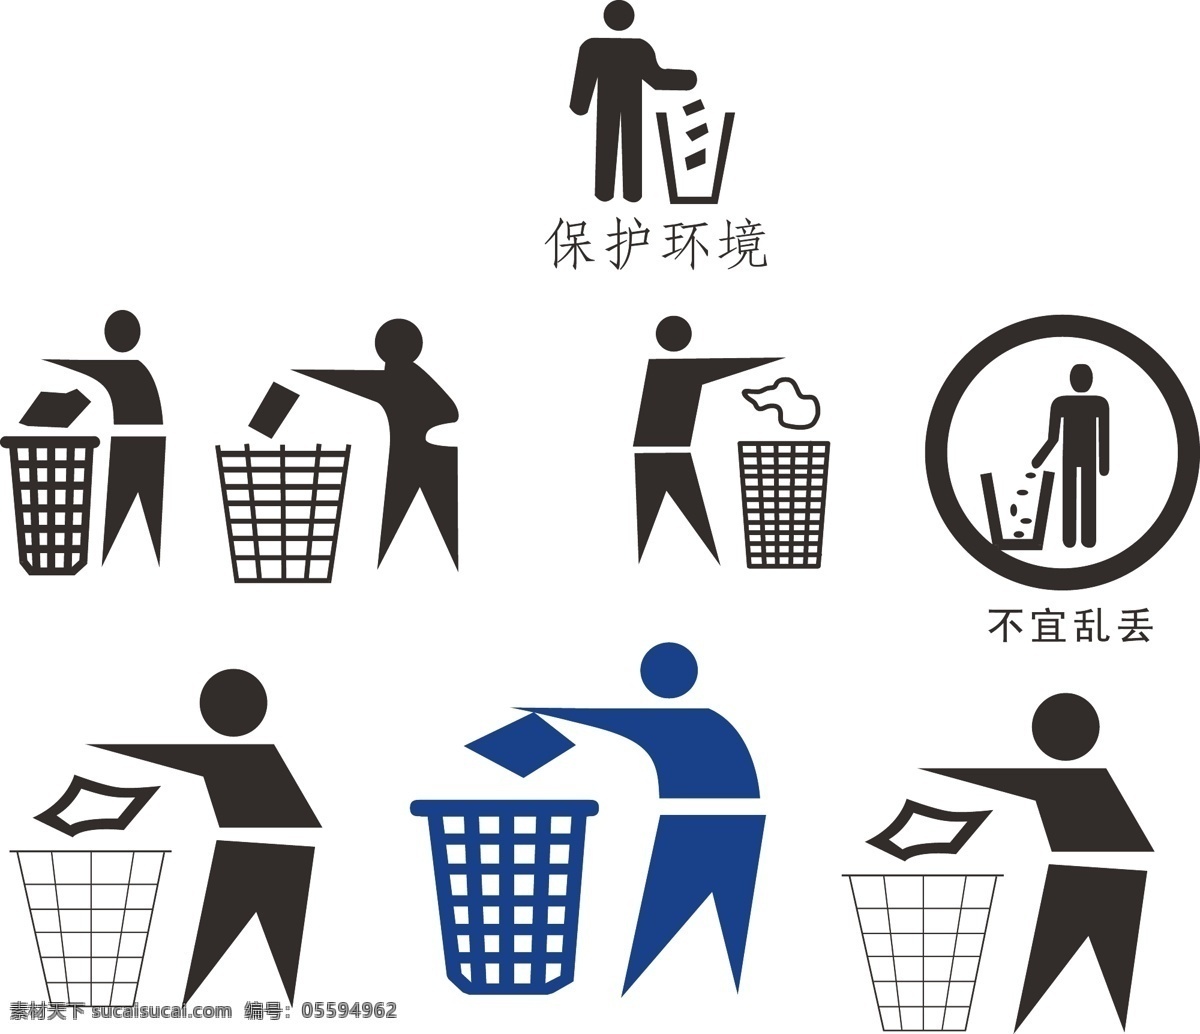 垃圾桶标志 垃圾循环标志 垃圾桶设计 标志设计 ai垃圾桶 垃圾桶矢量图 各种垃圾桶 生活百科 生活用品